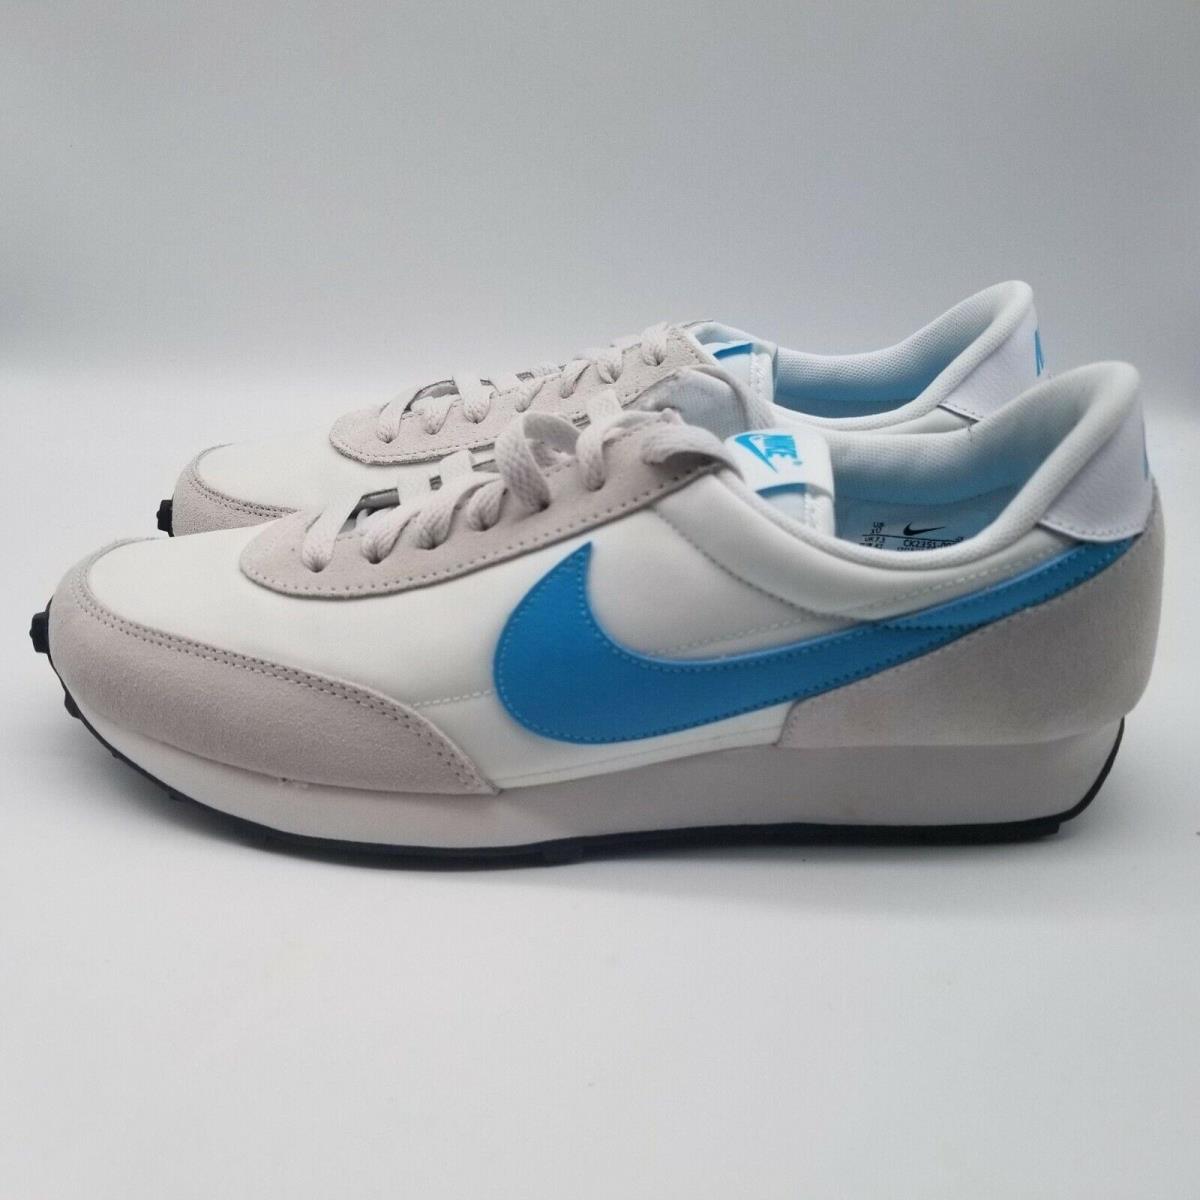 Nike Daybreak Vast Grey Blue Fury Dbreak Shoes Size 10